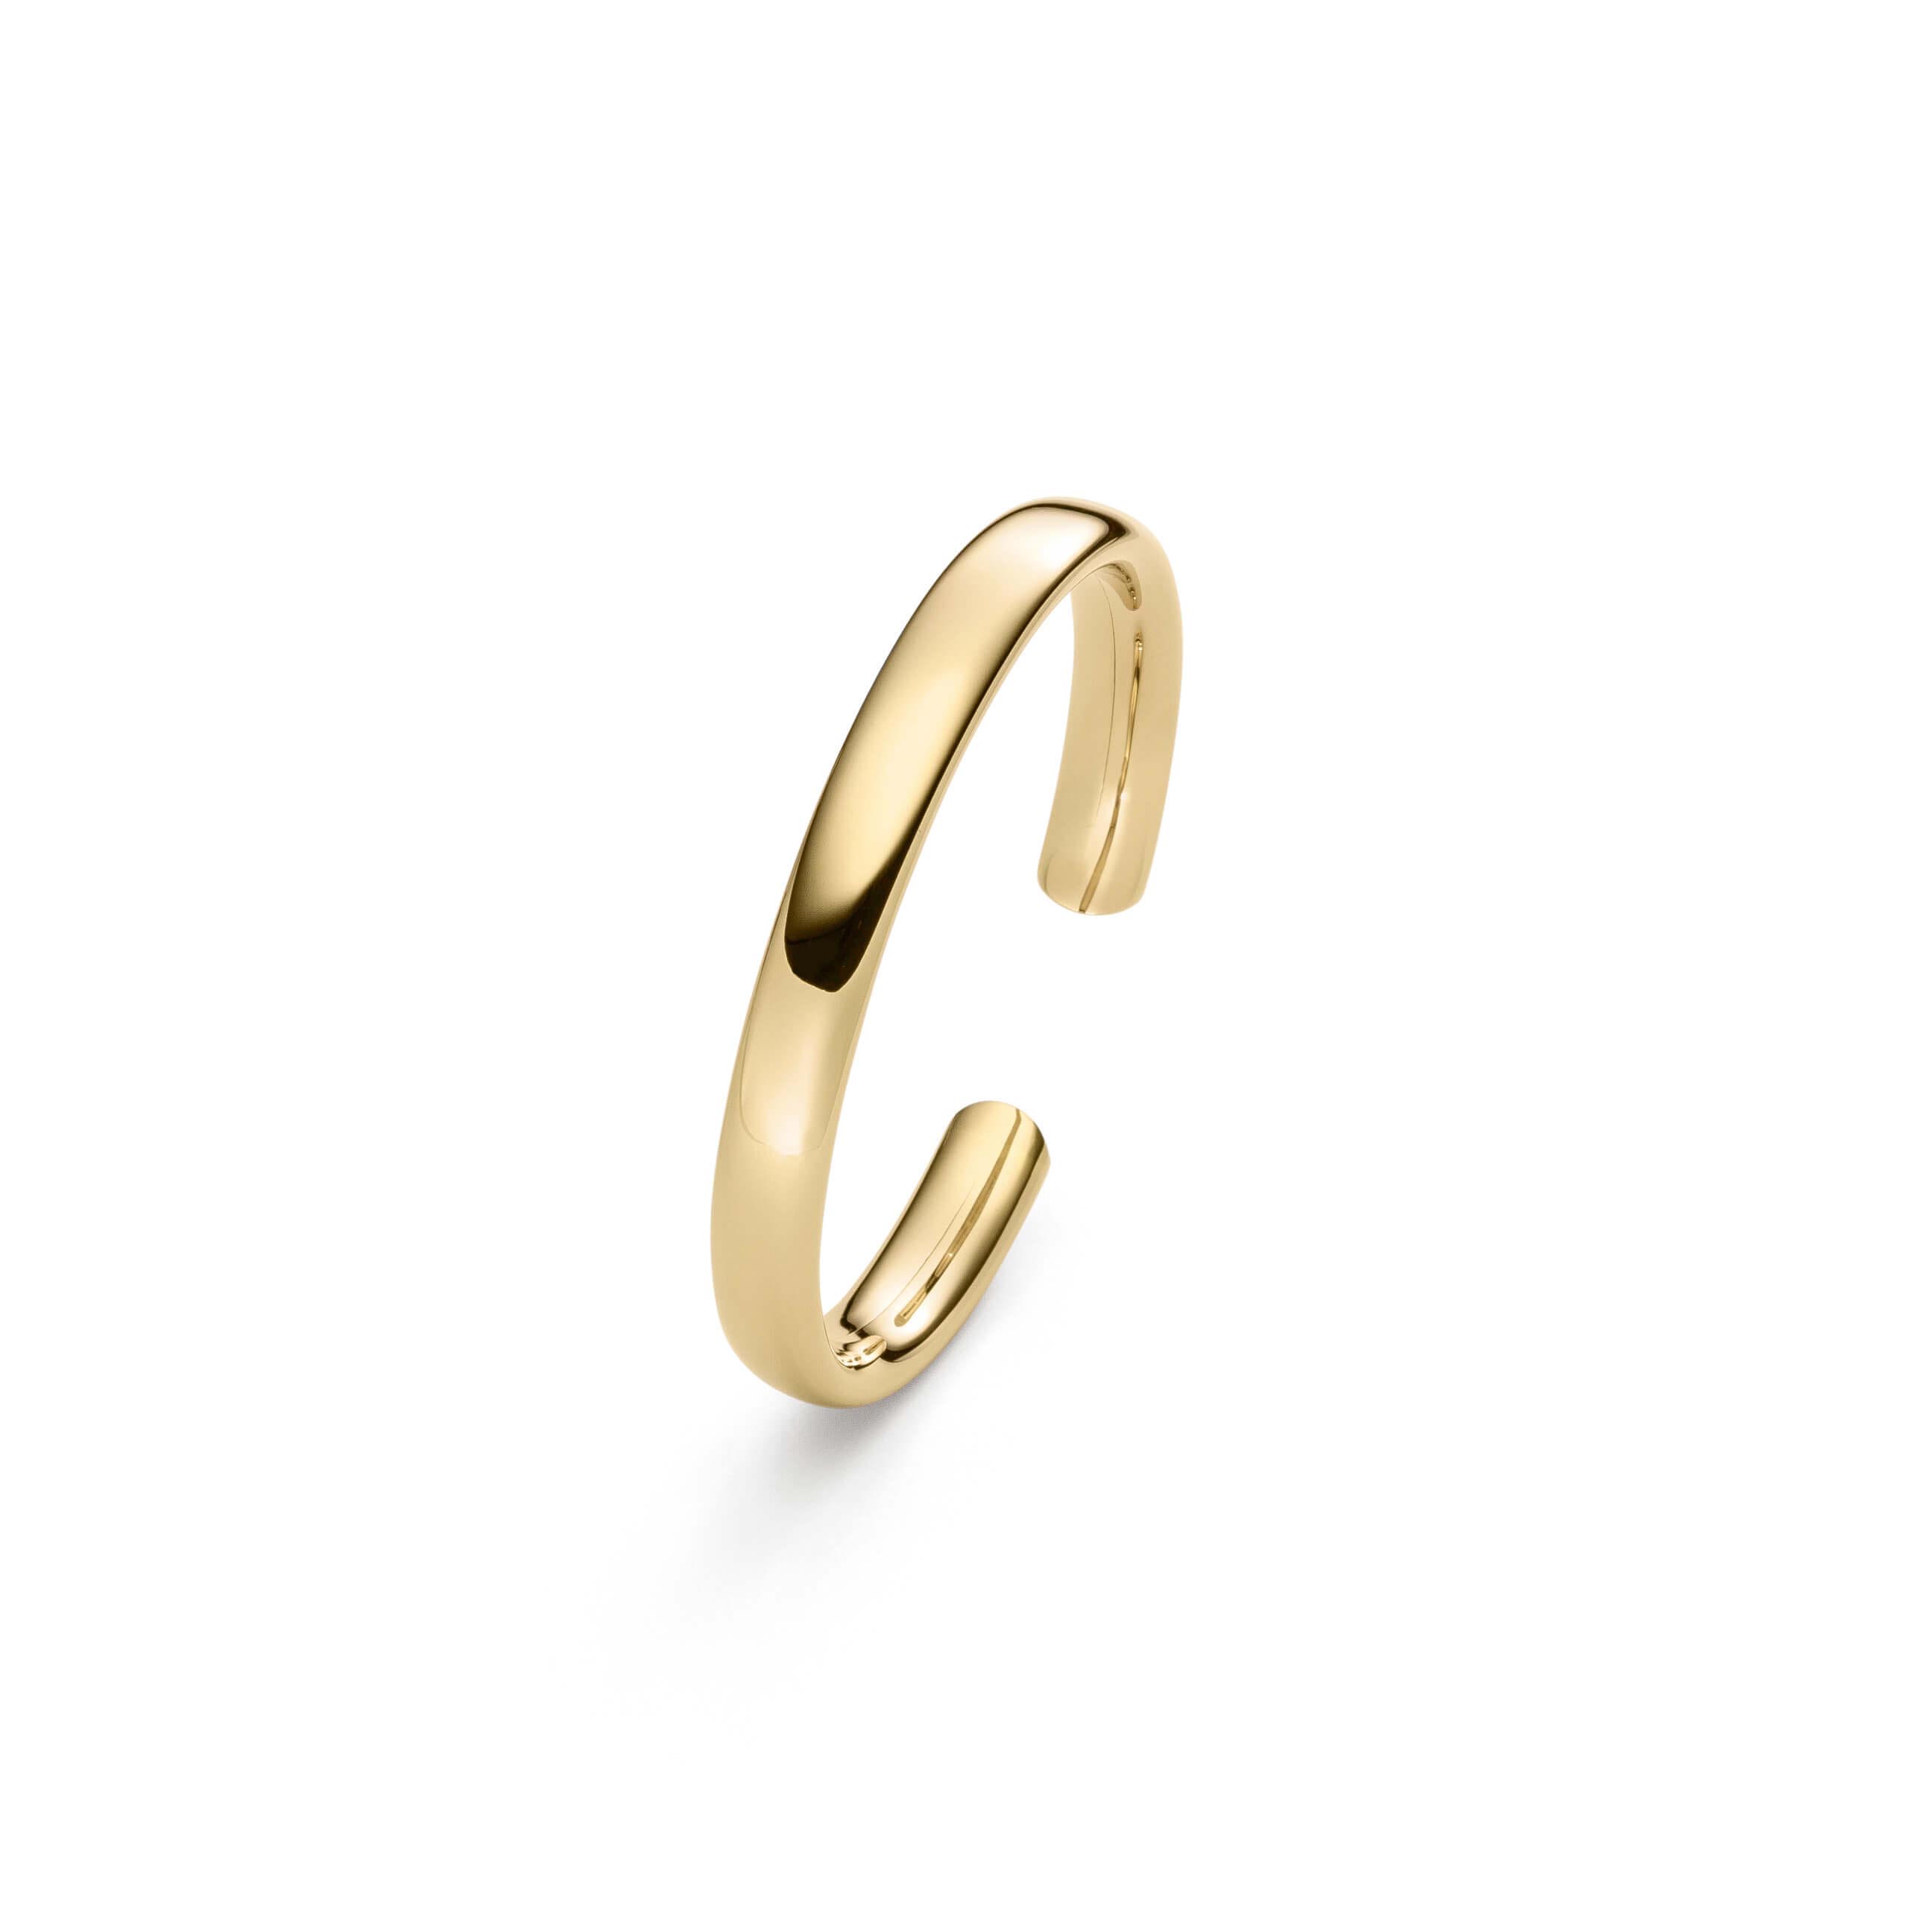 Grosir berlapis emas 18 karat OEM/ODM Perhiasan gelang perak produsen perhiasan pabrik perak